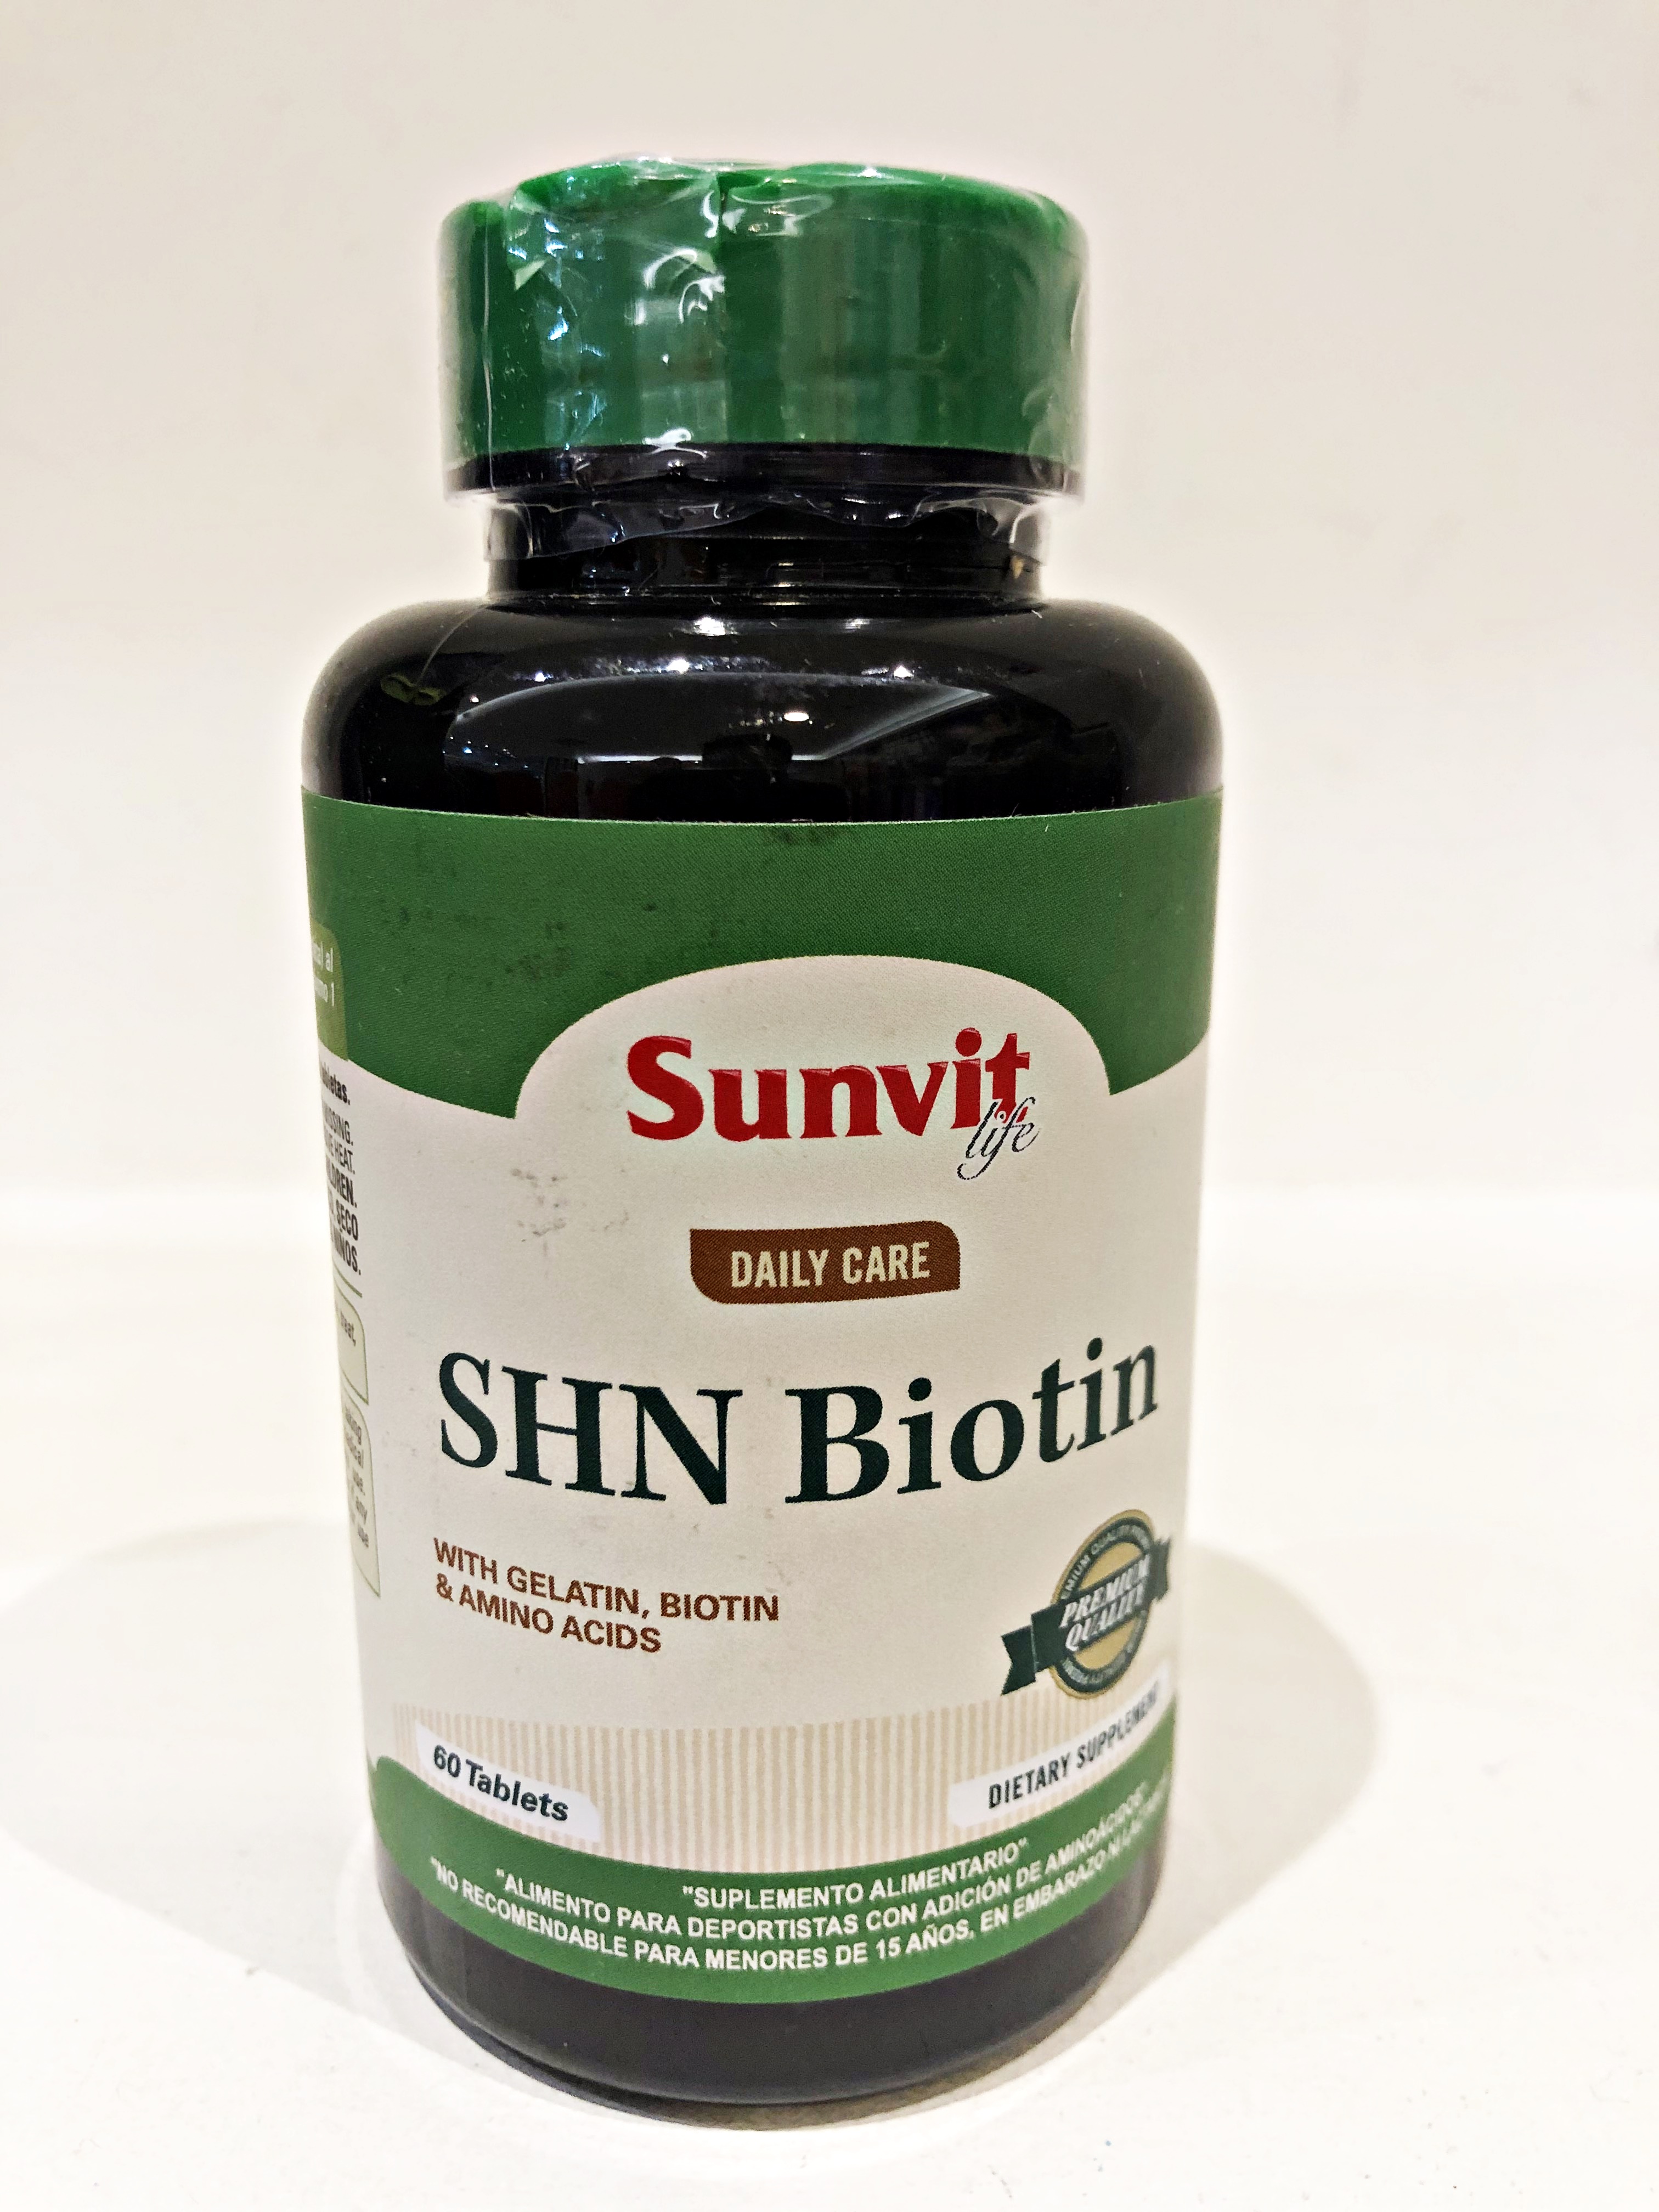 SHN Biotin Sunvit